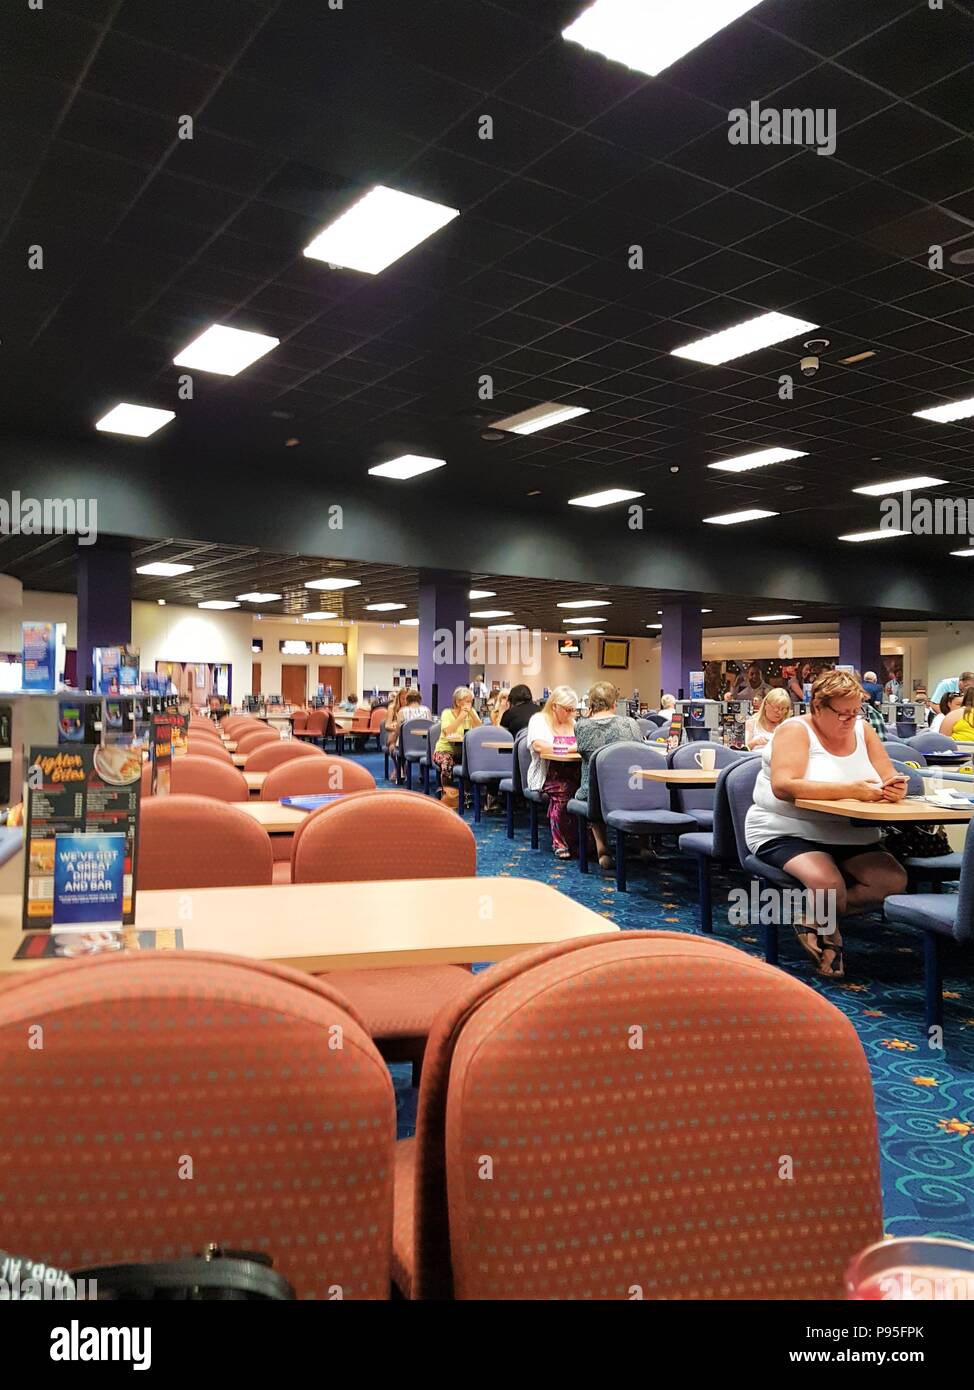 People playing bingo at Gala Bingo Hall Stock Photo